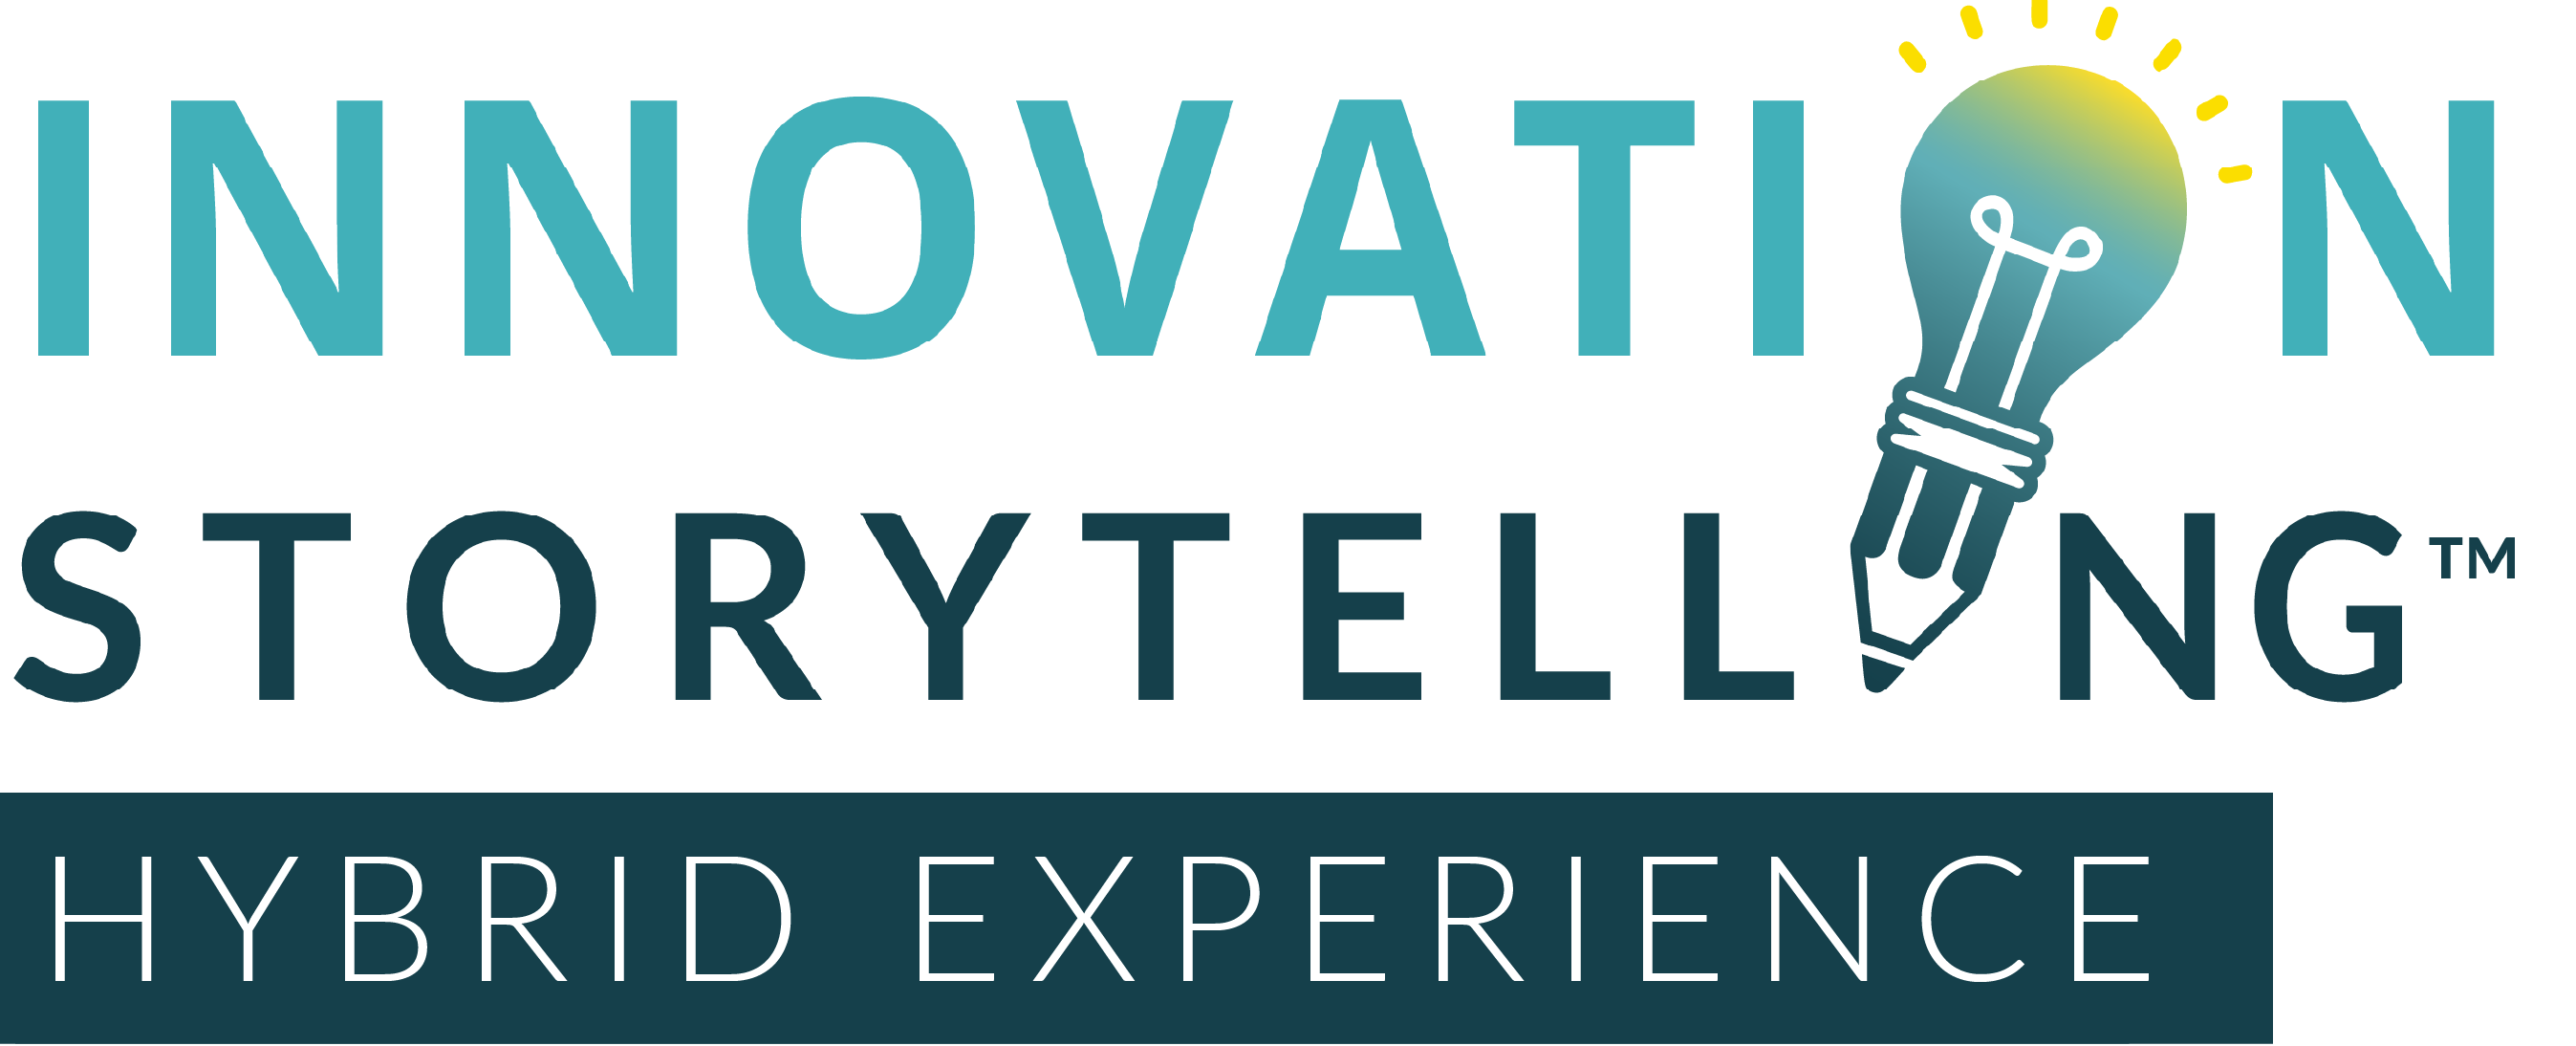 Innovation Storytelling Training hybrid